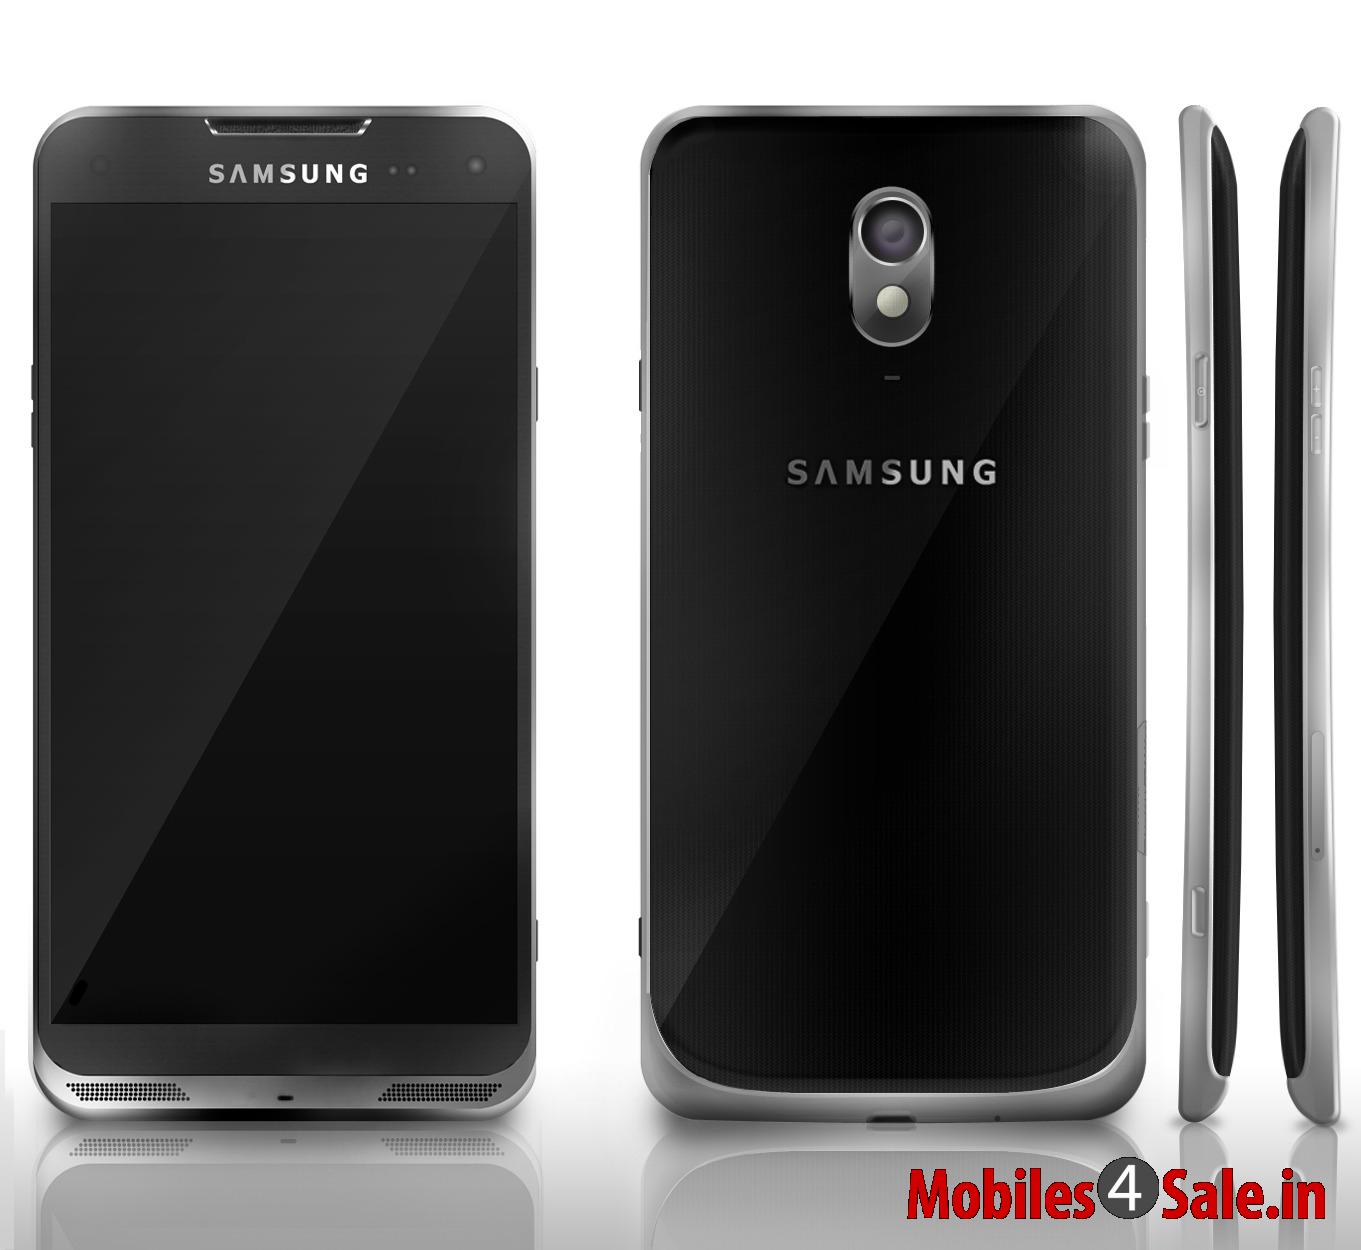 Samsung Galaxy S5 Rumour